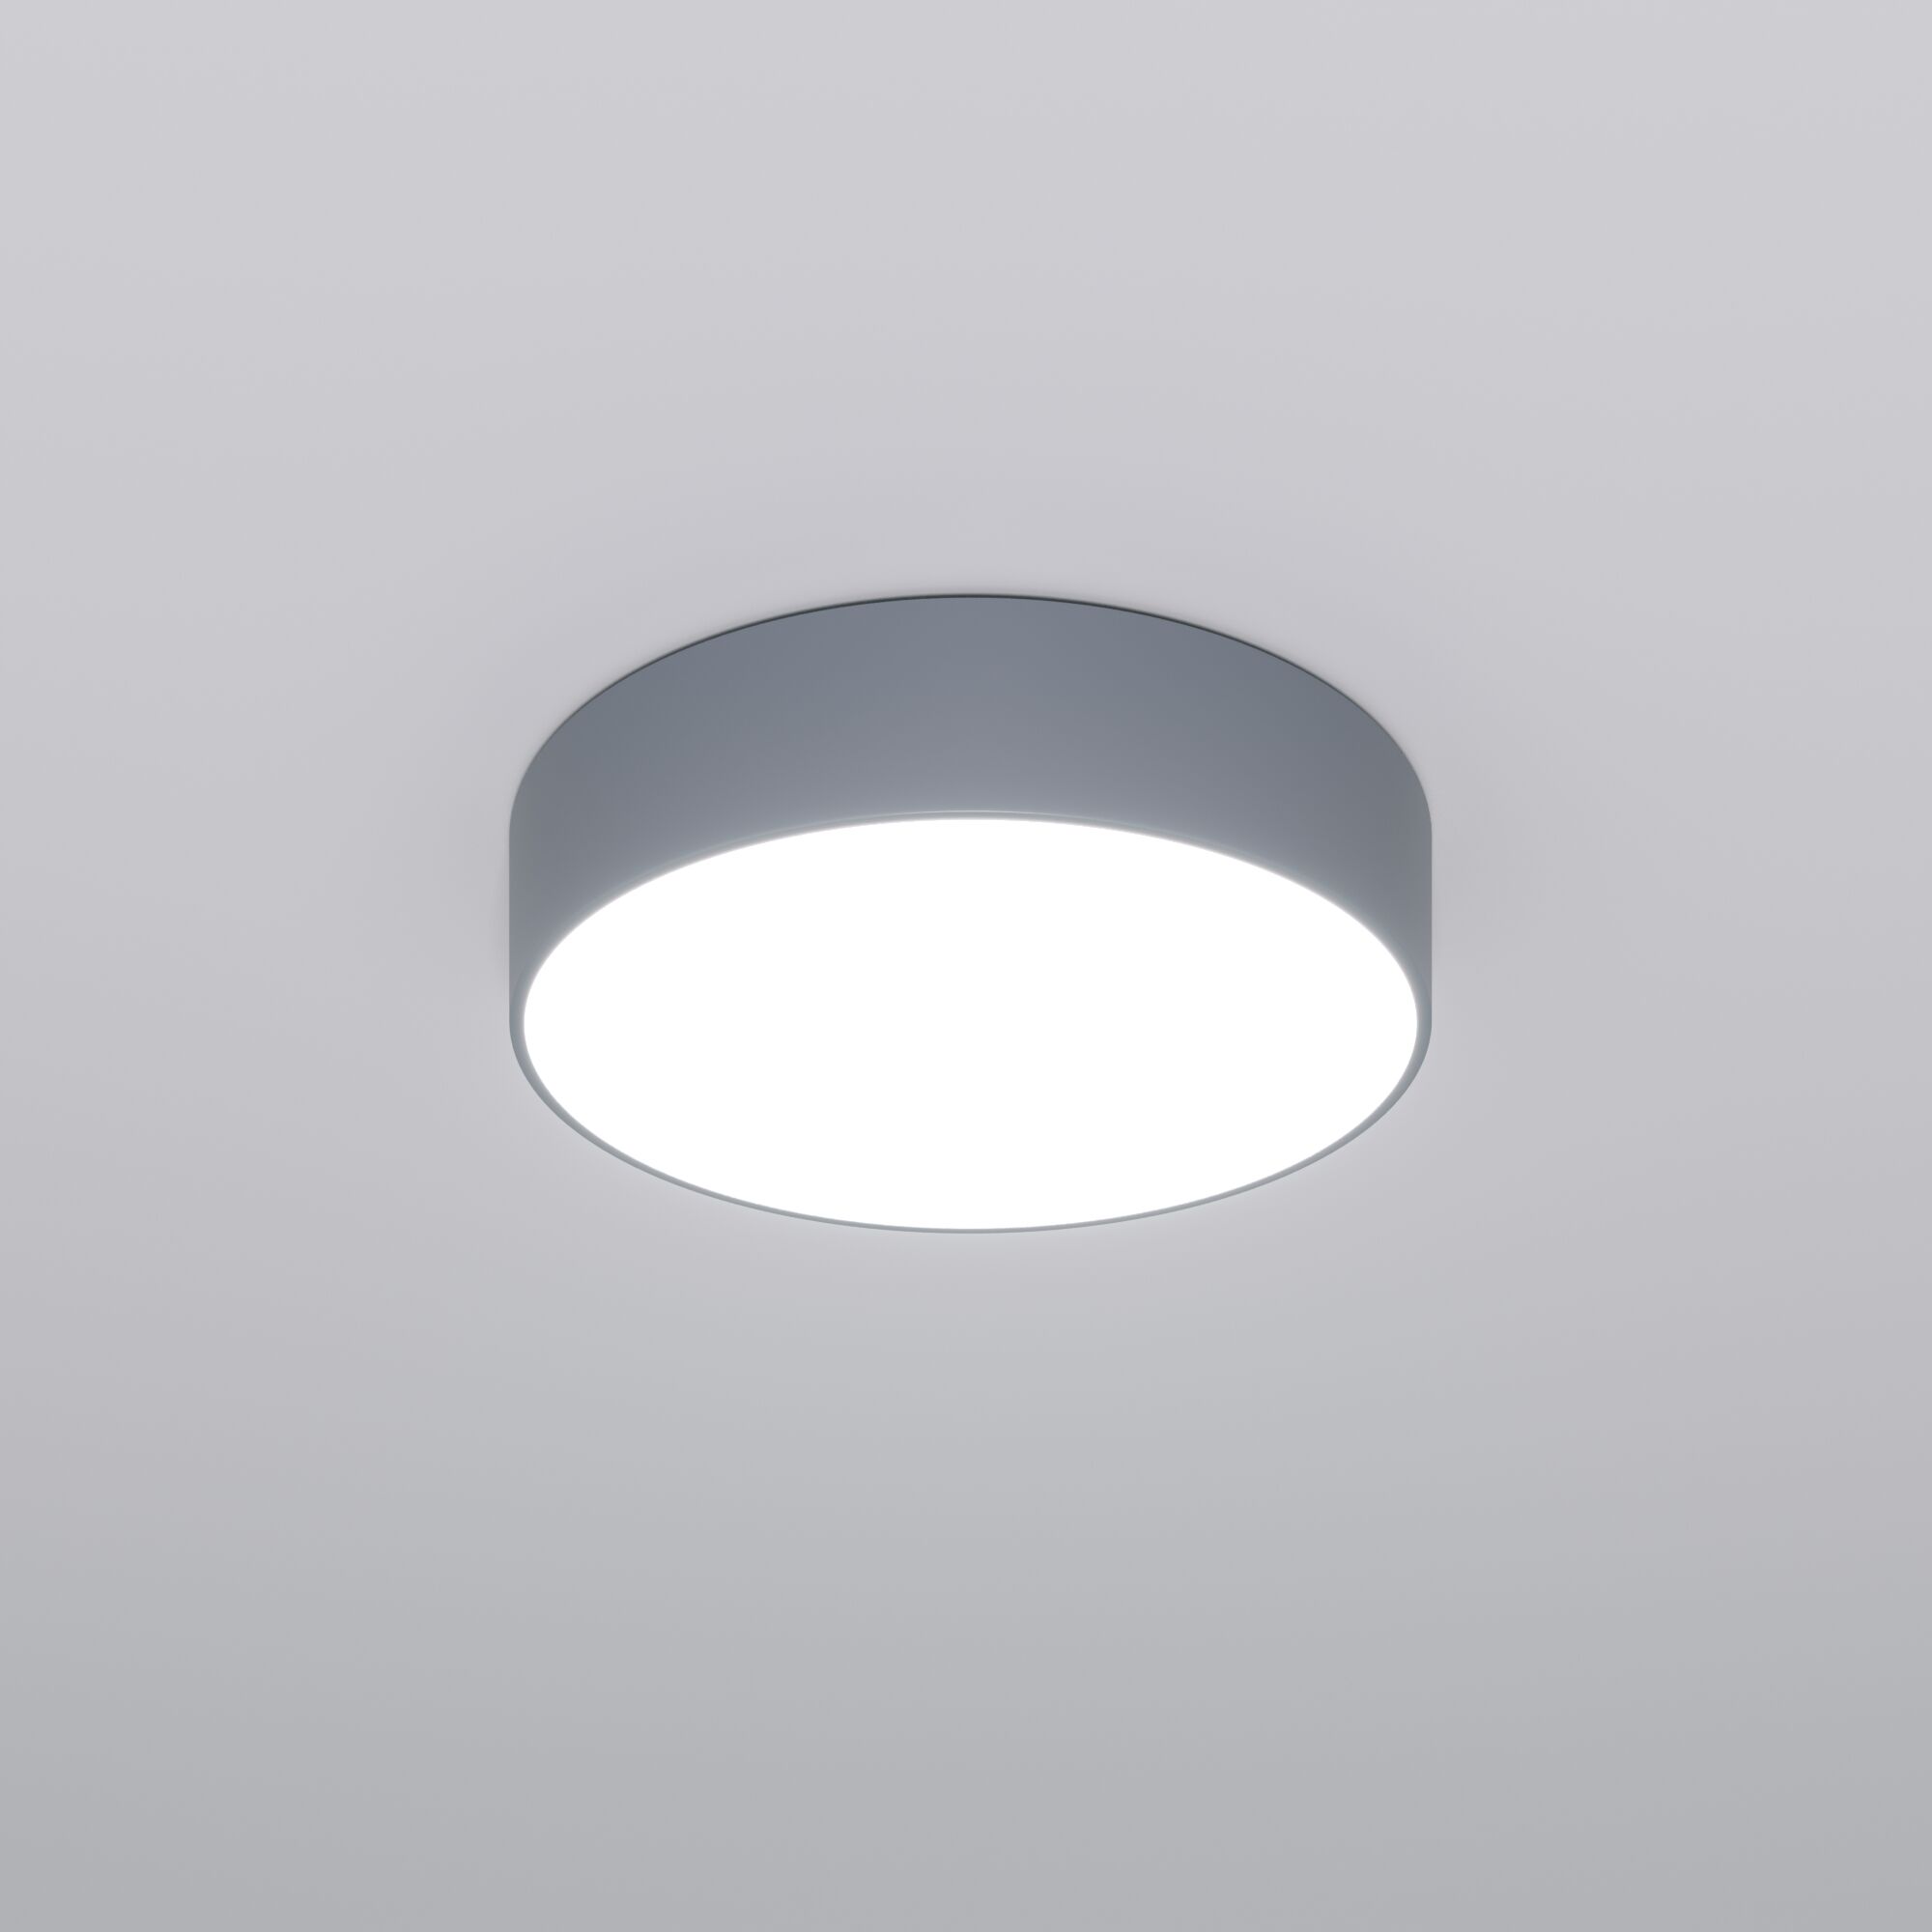 Потолочный светодиодный светильник с регулировкой яркости и цветовой температуры Eurosvet Entire 90318/1 серый. Фото 1